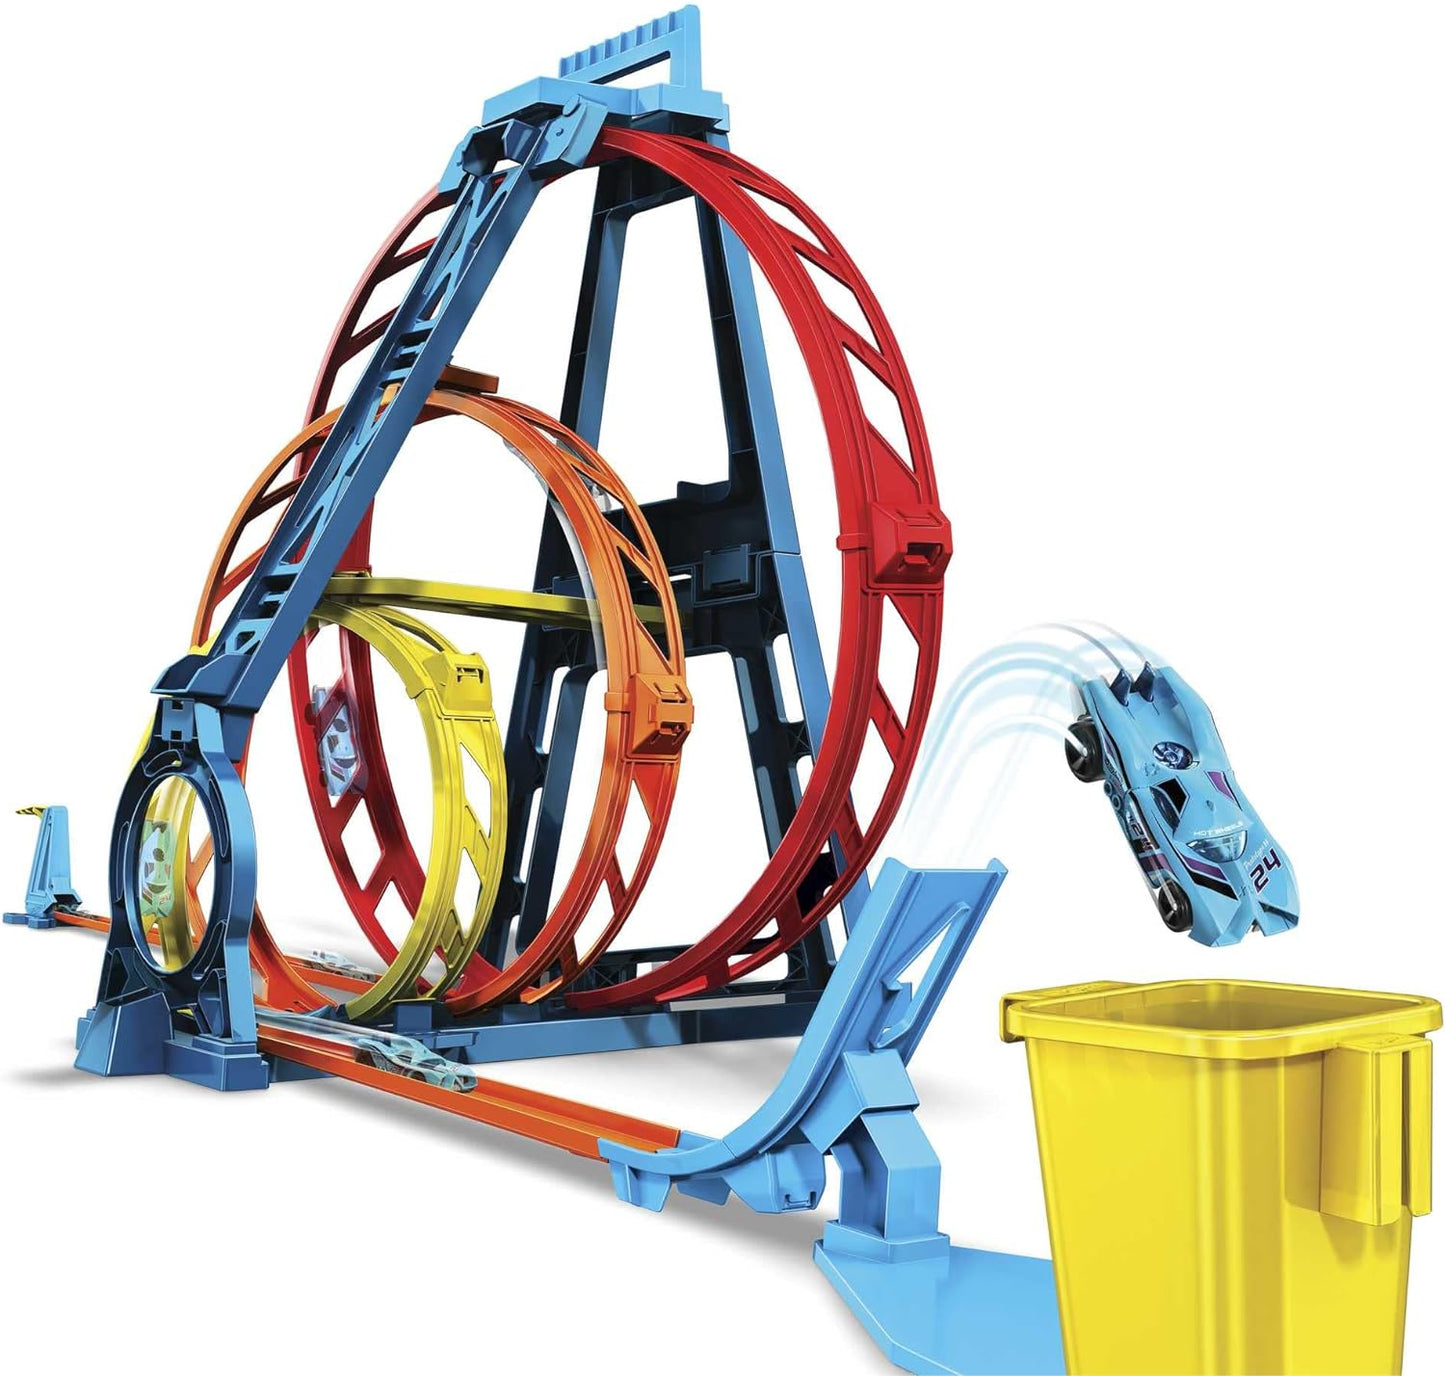 Fisher-Price Hot Wheels Track Builder Kit ilimitado de loop triplo Conjunto de presente dobrável de 3 loops para crianças de 6 a 12 anos e um veículo Hot Wheels em escala 1:64 com pontos de conexão, GYP65